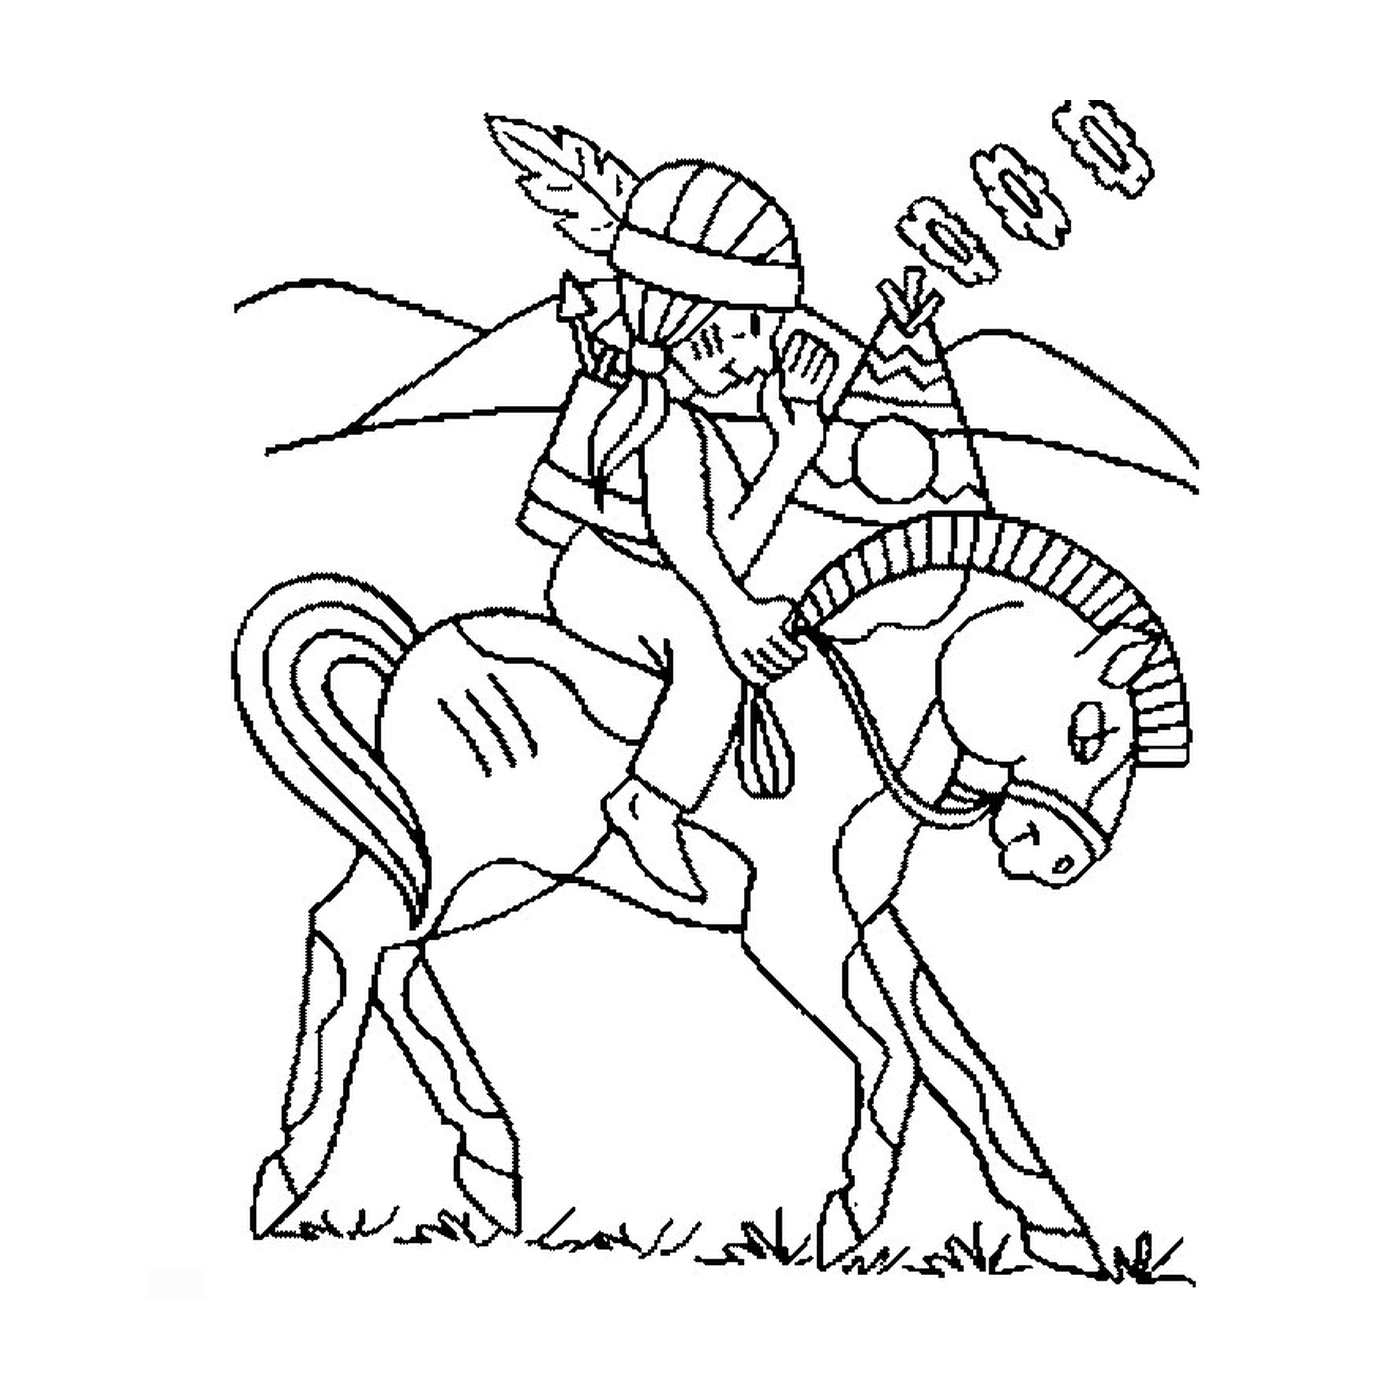  Mensch reitet auf einem Pferd wie die Indianer 